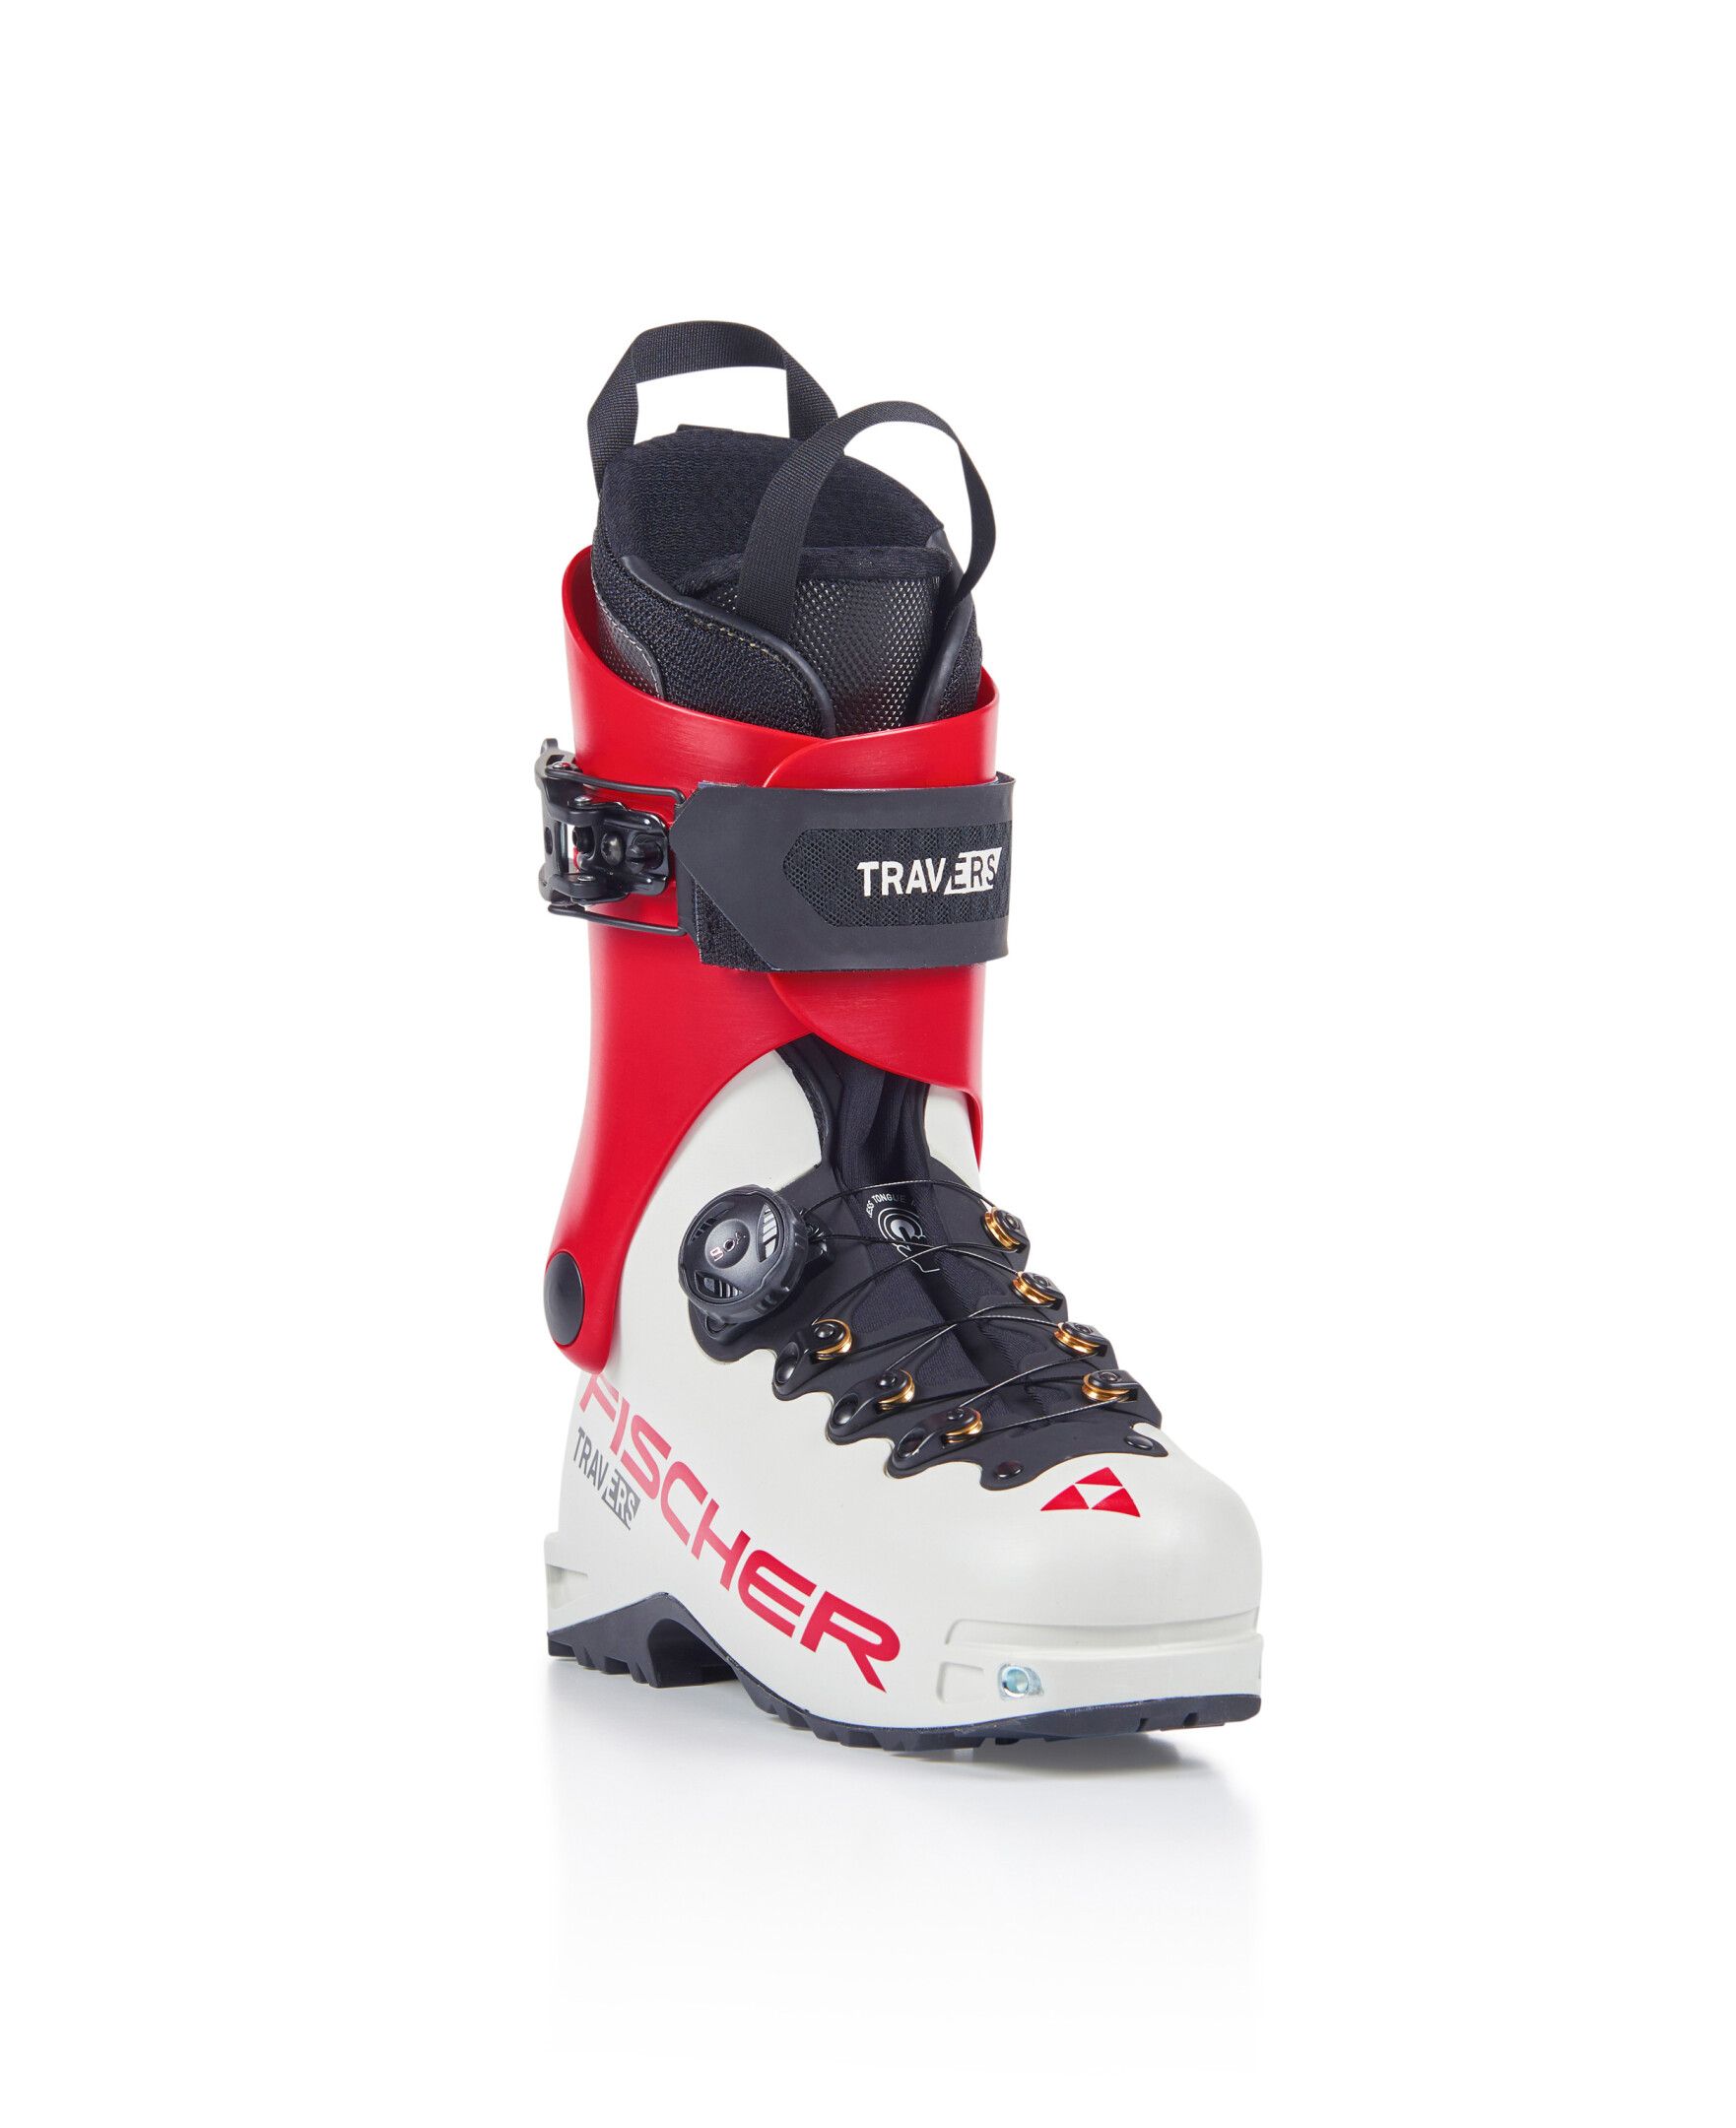 Chaussures de ski de randonnée Travers GR - Blanc / Rouge